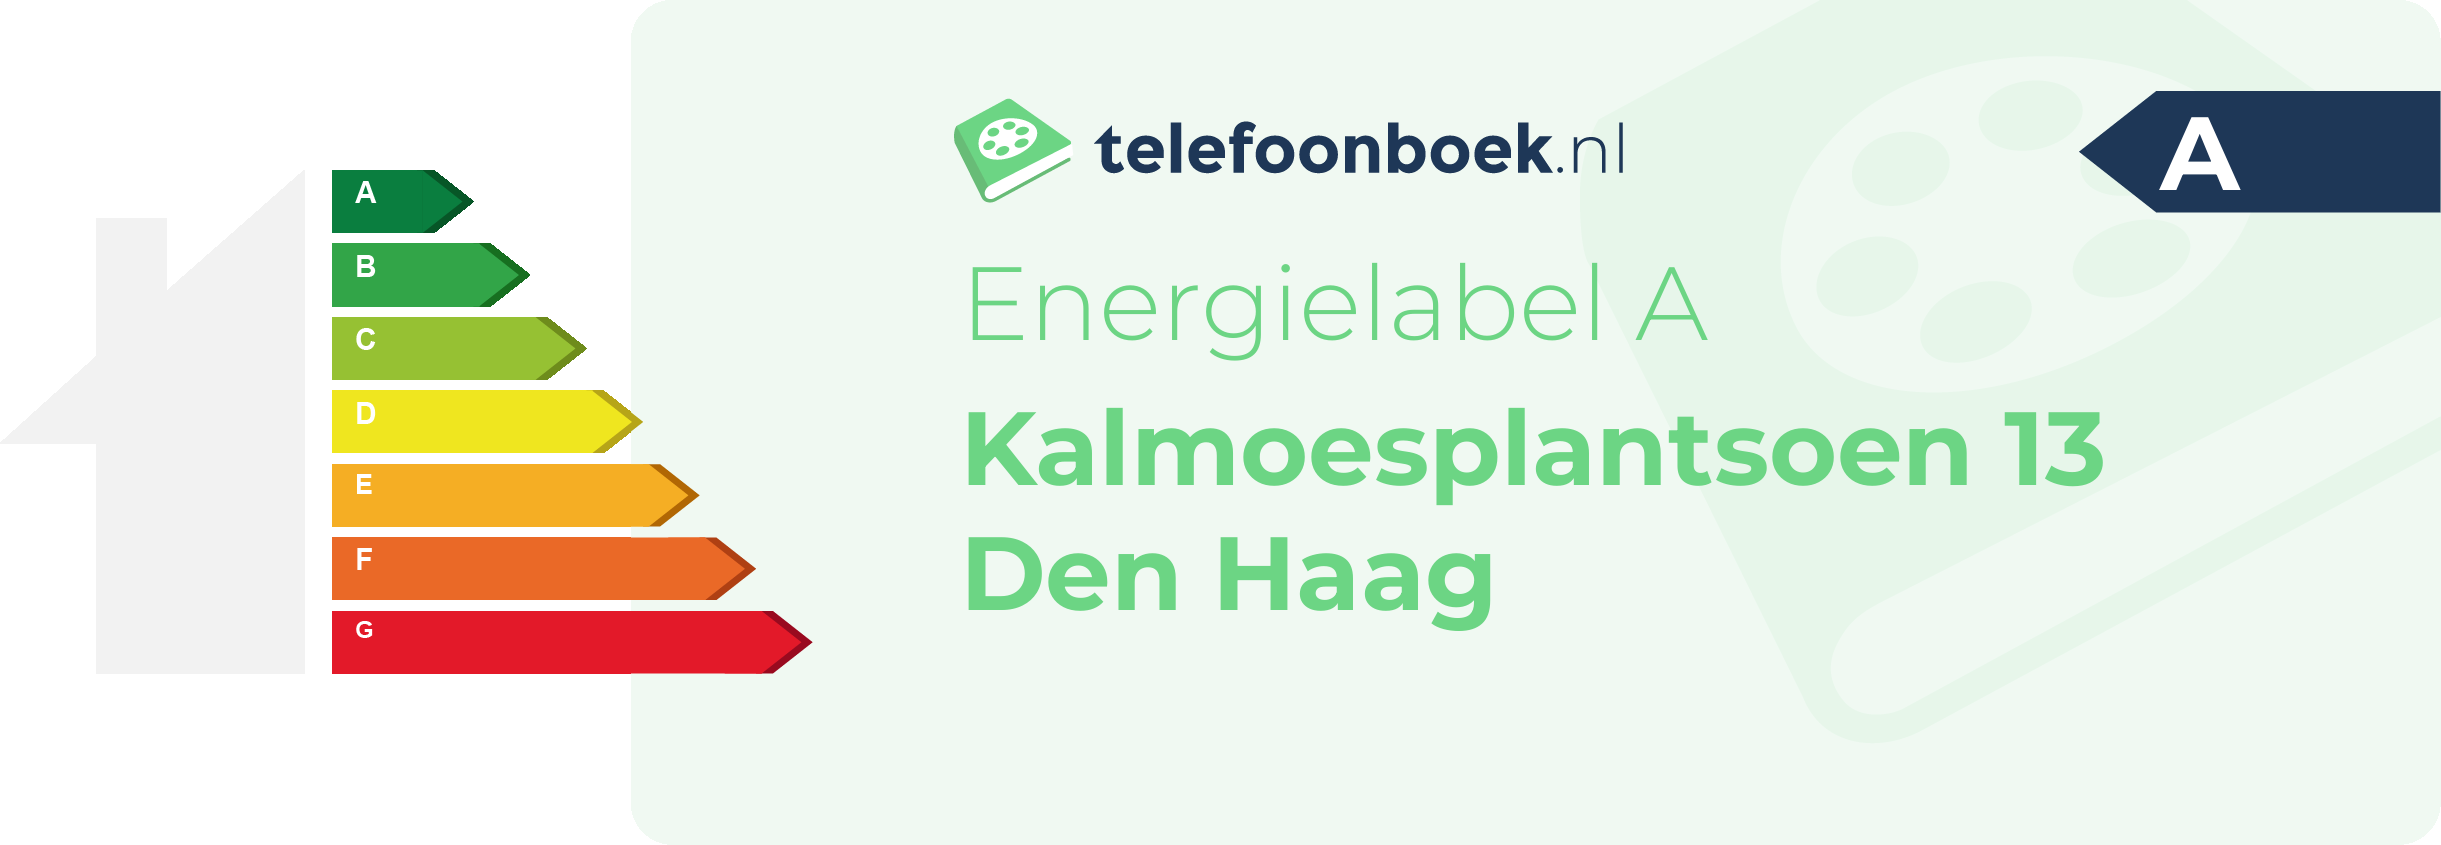 Energielabel Kalmoesplantsoen 13 Den Haag